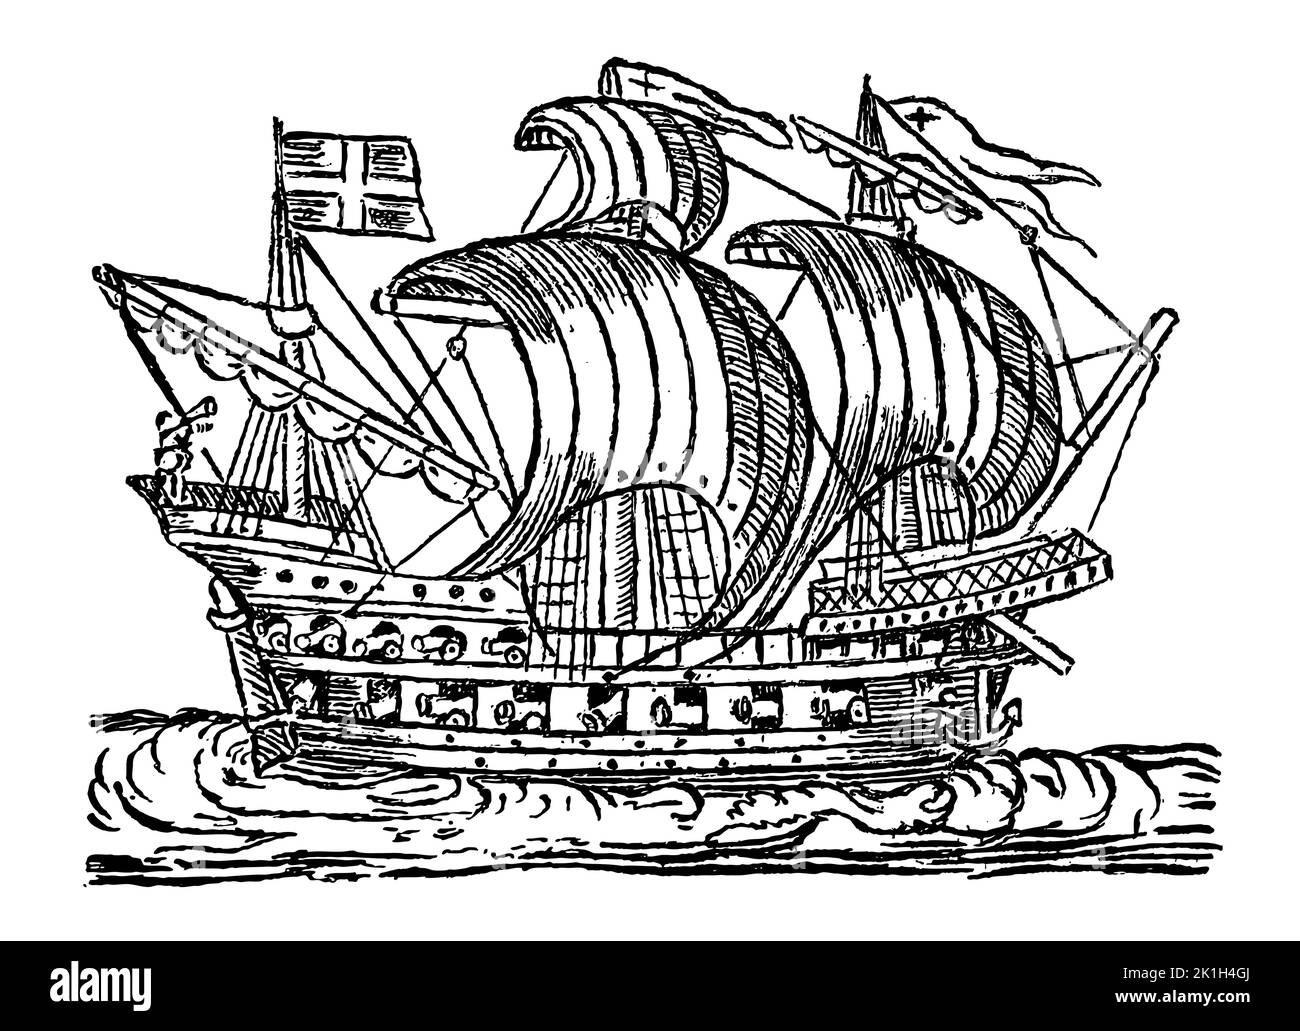 Ancien voilier naval avec vue latérale sur la mer ondulée. Illustration après gravure de bois du 16th siècle Illustration de Vecteur